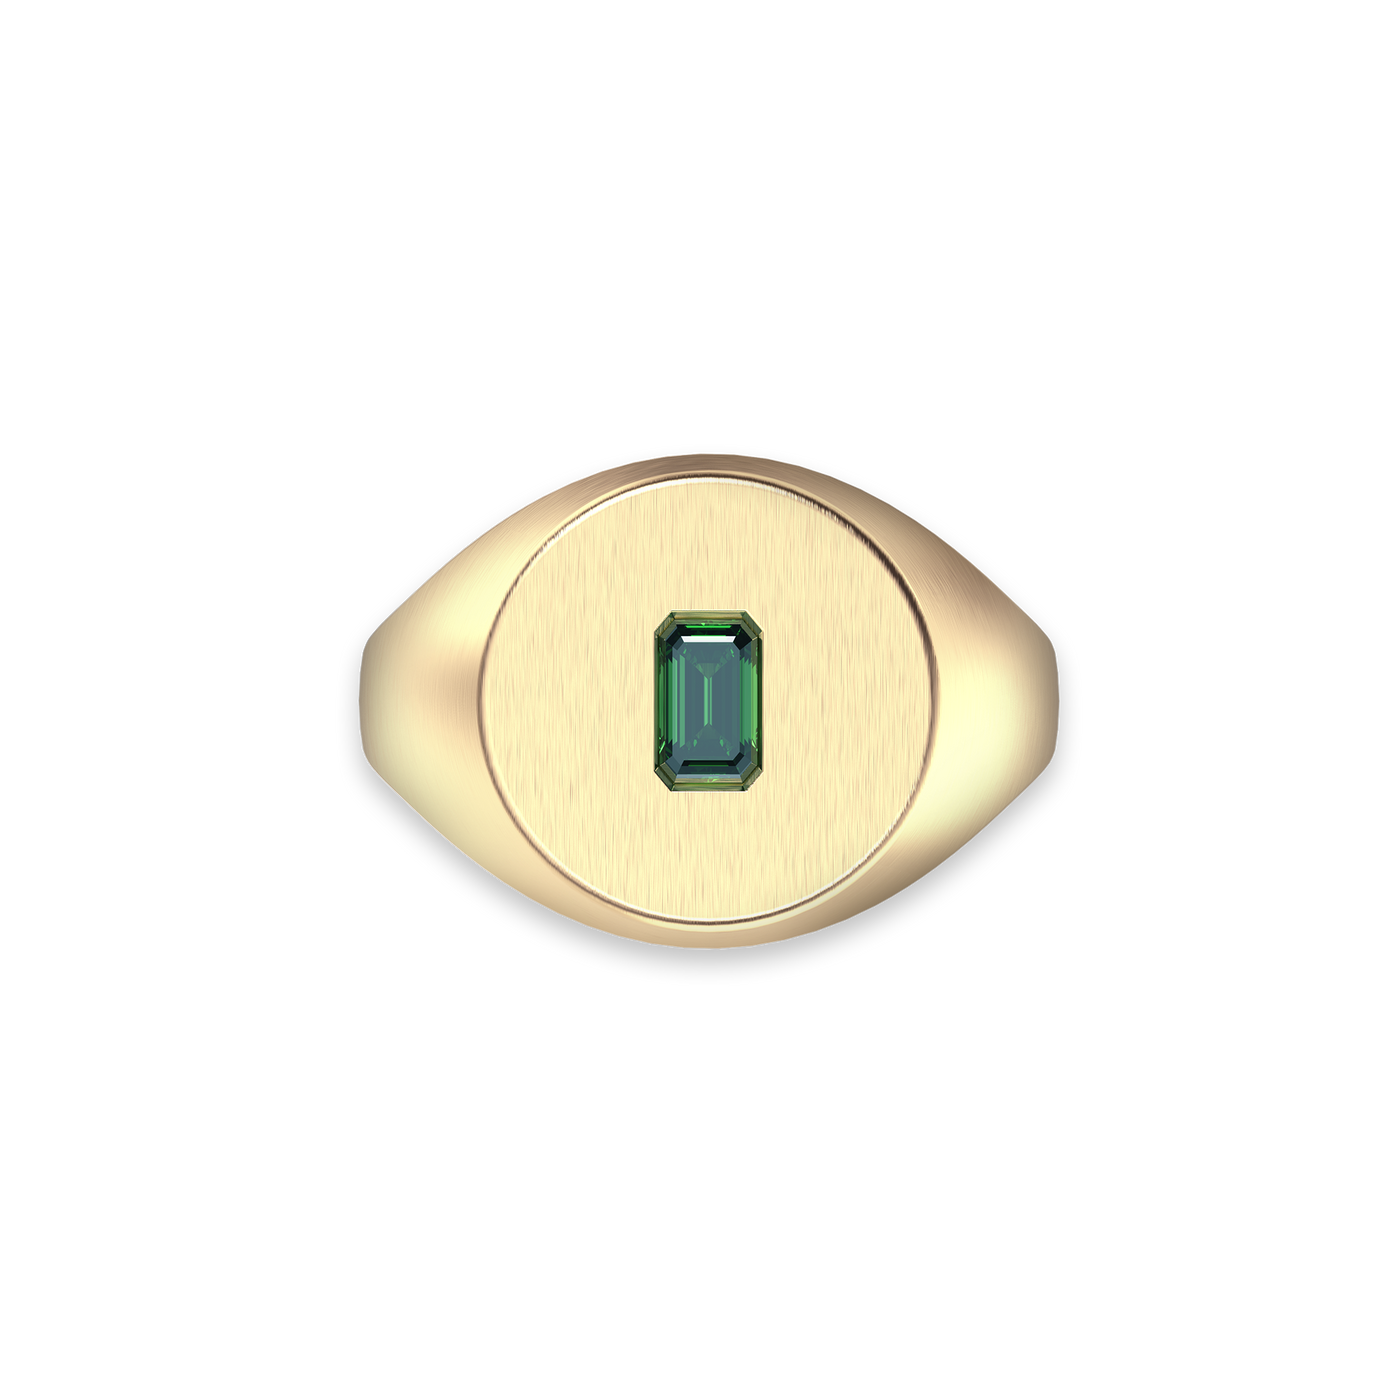 Disc Gemstone Signet Ring